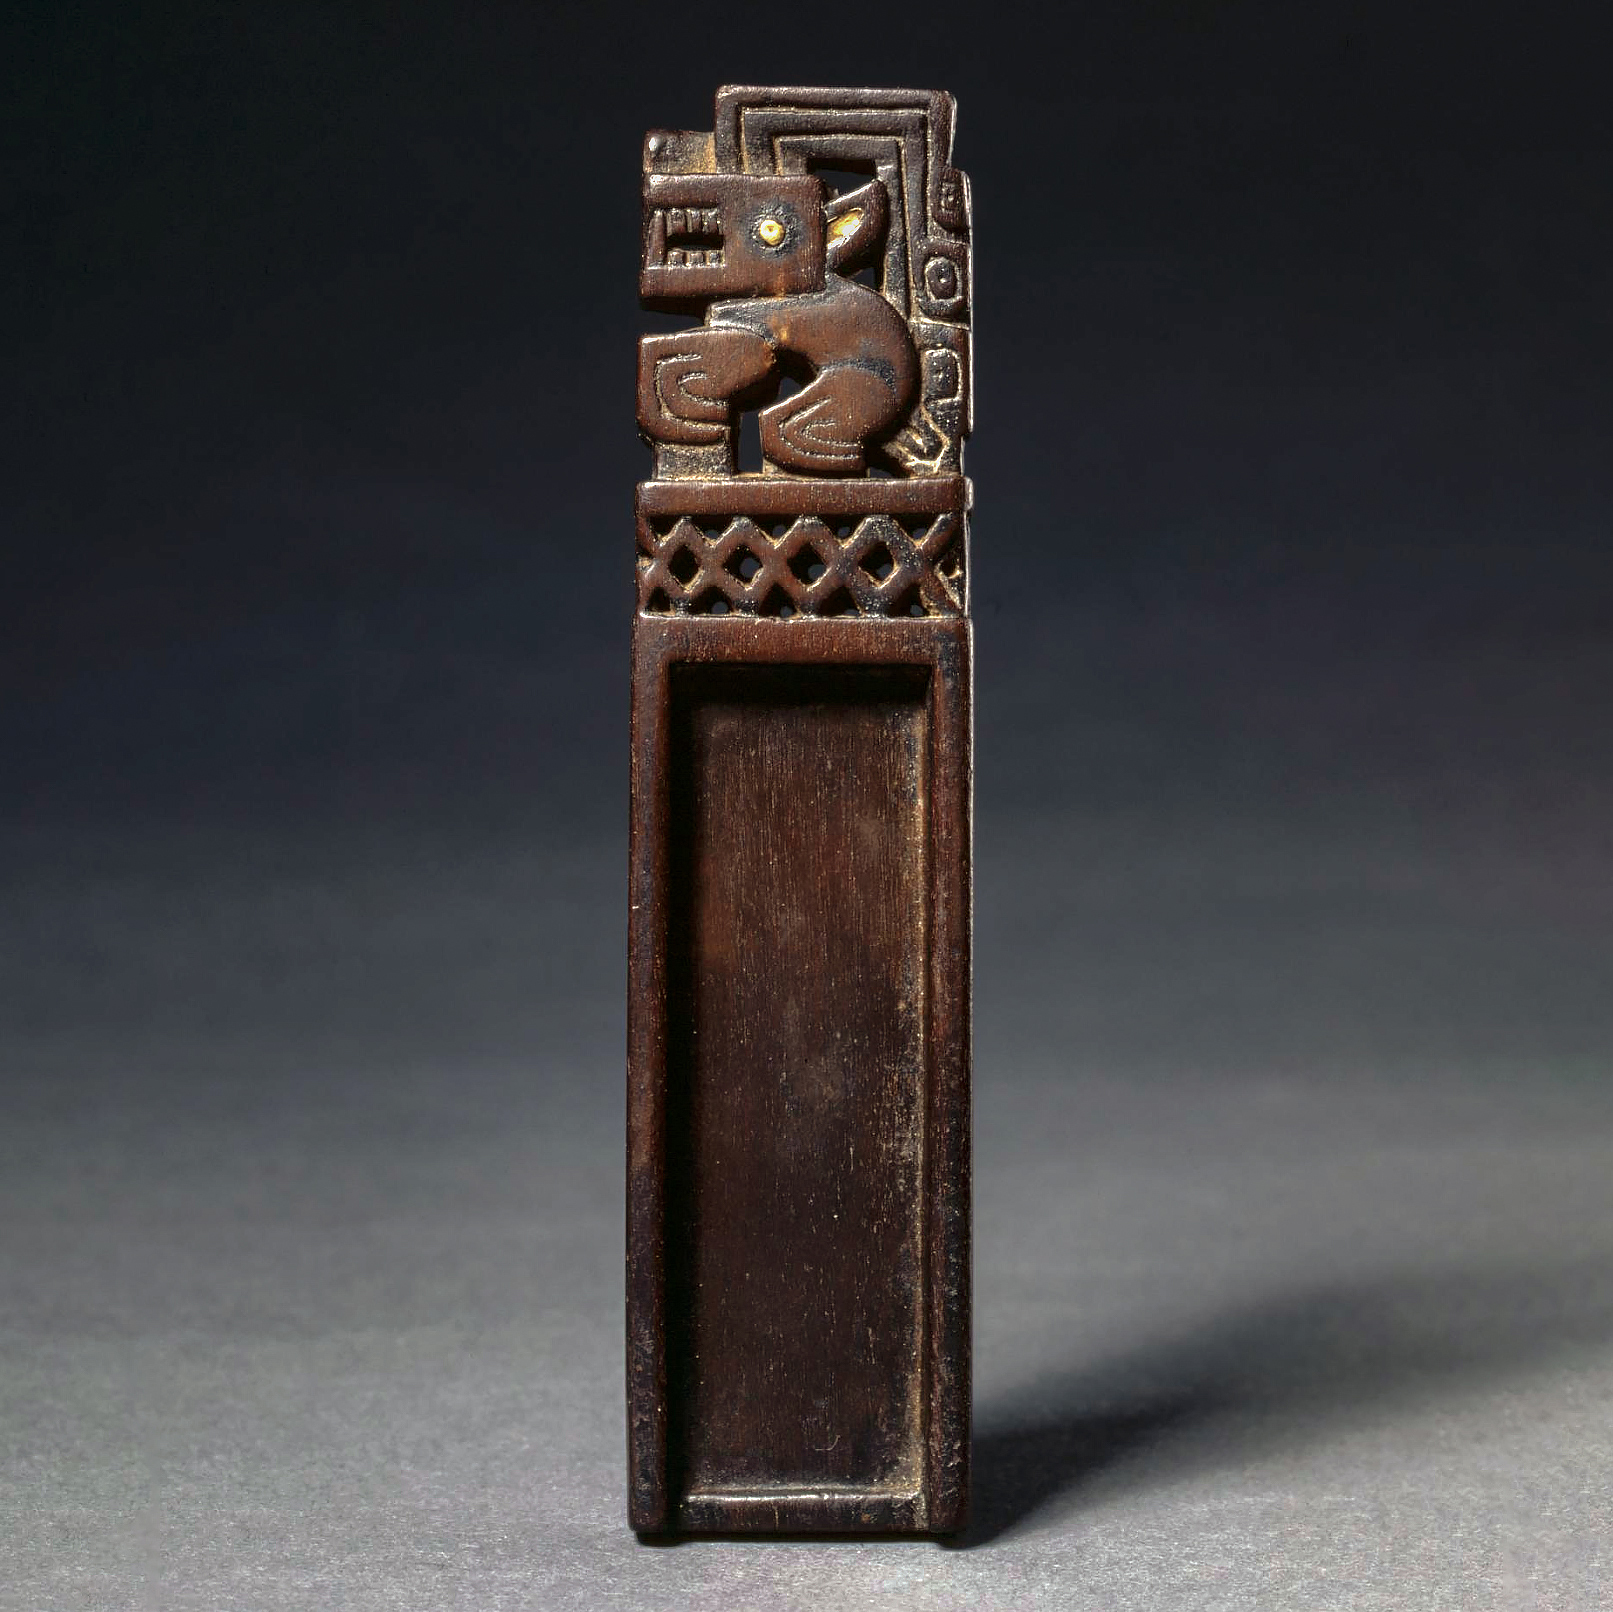 Нюхательная ложечка. Рекуай, 1-650 гг. н.э. Коллекция The Cleveland Museum of Art.